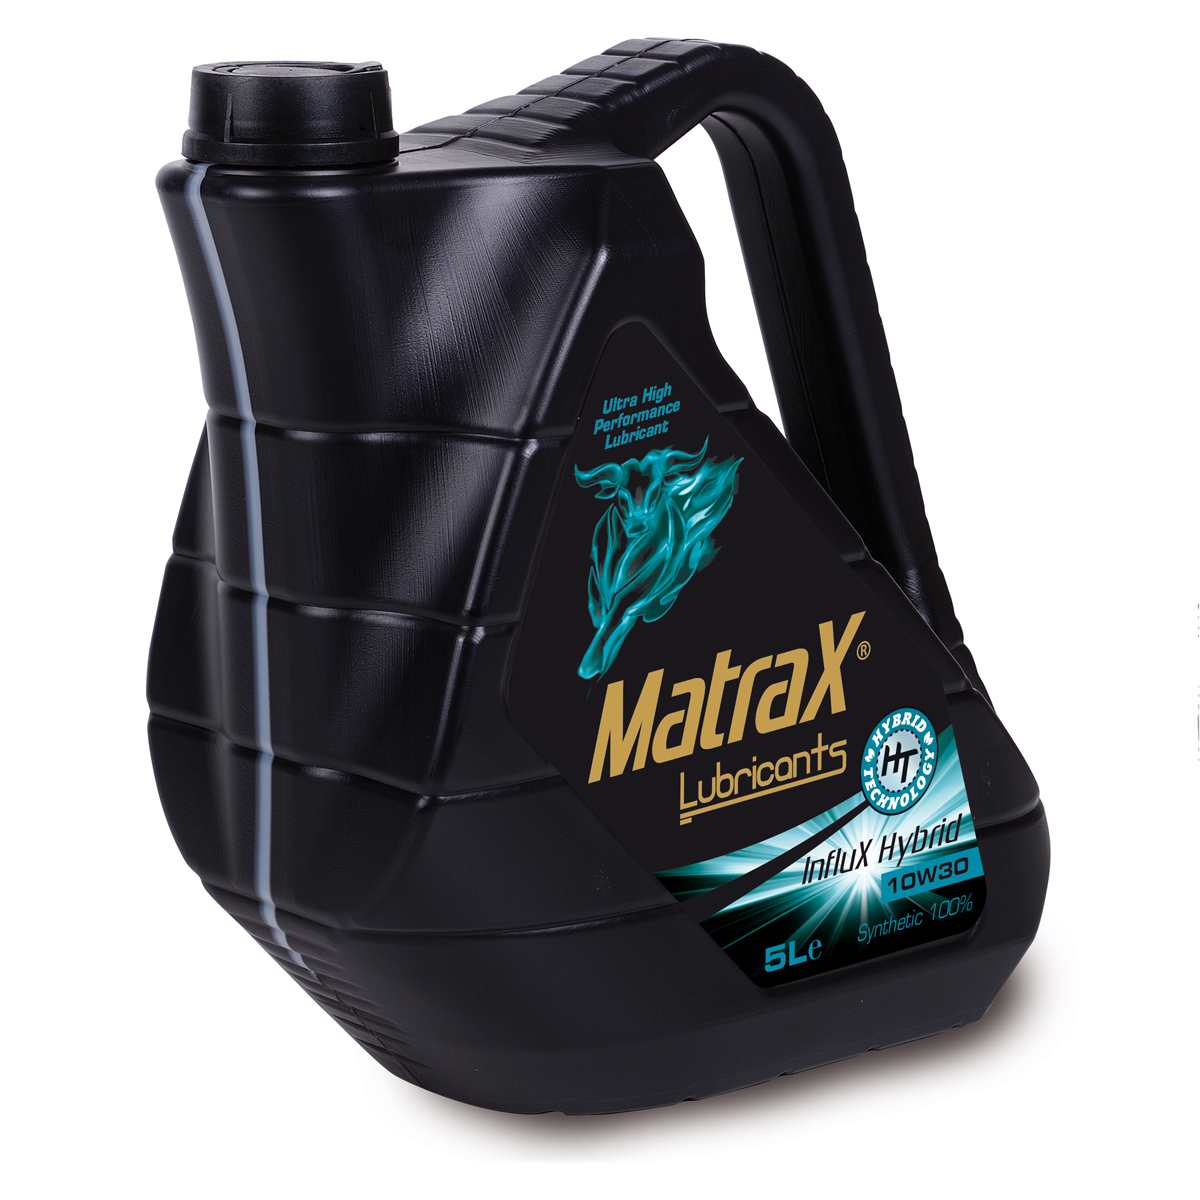 matrax-lubricants-influx-hybrid-10w30-5l